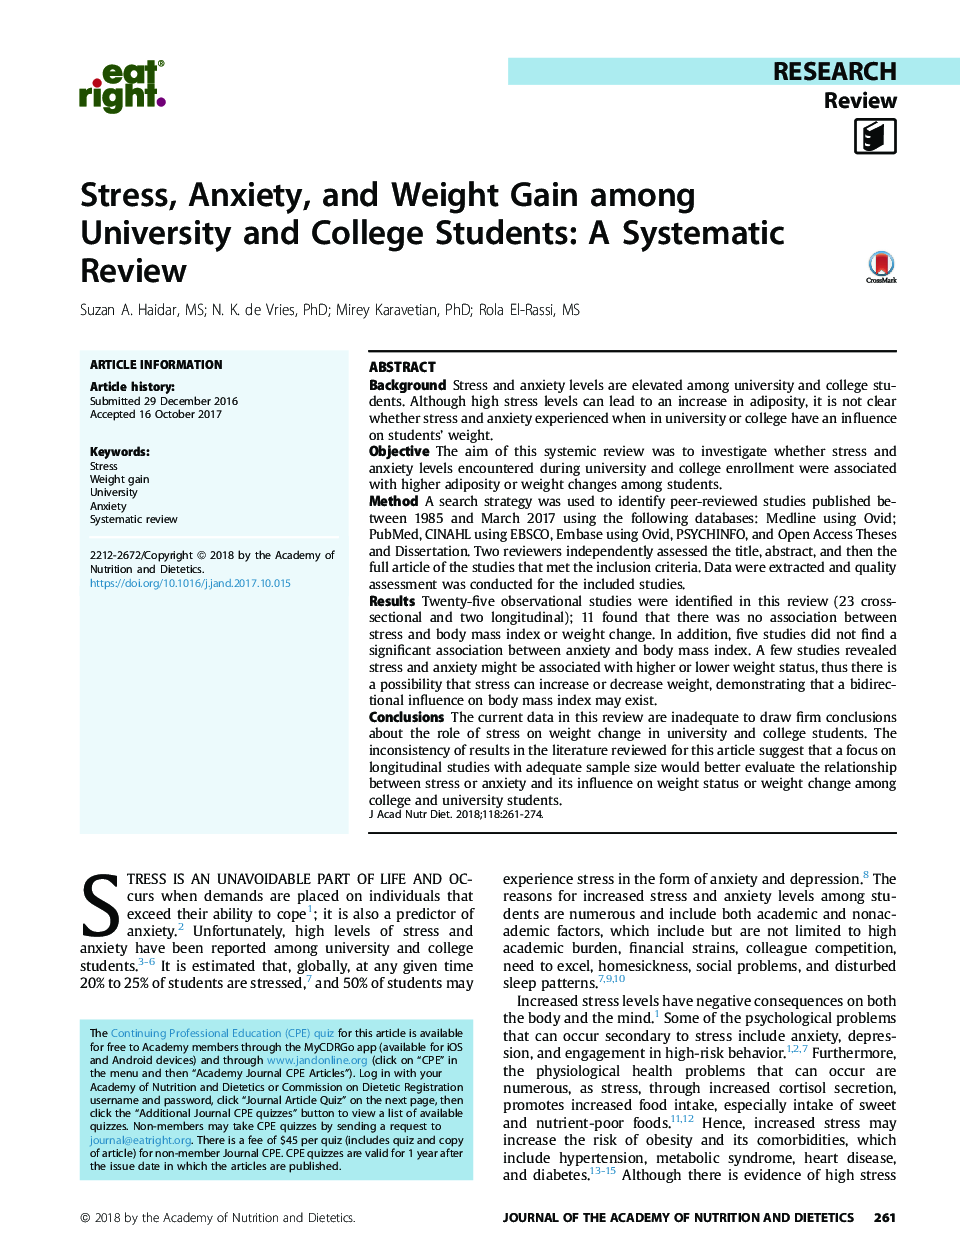 استرس، اضطراب، و افزایش وزن در میان دانشجویان دانشگاه و کالج: یک بررسی سیستماتیک 